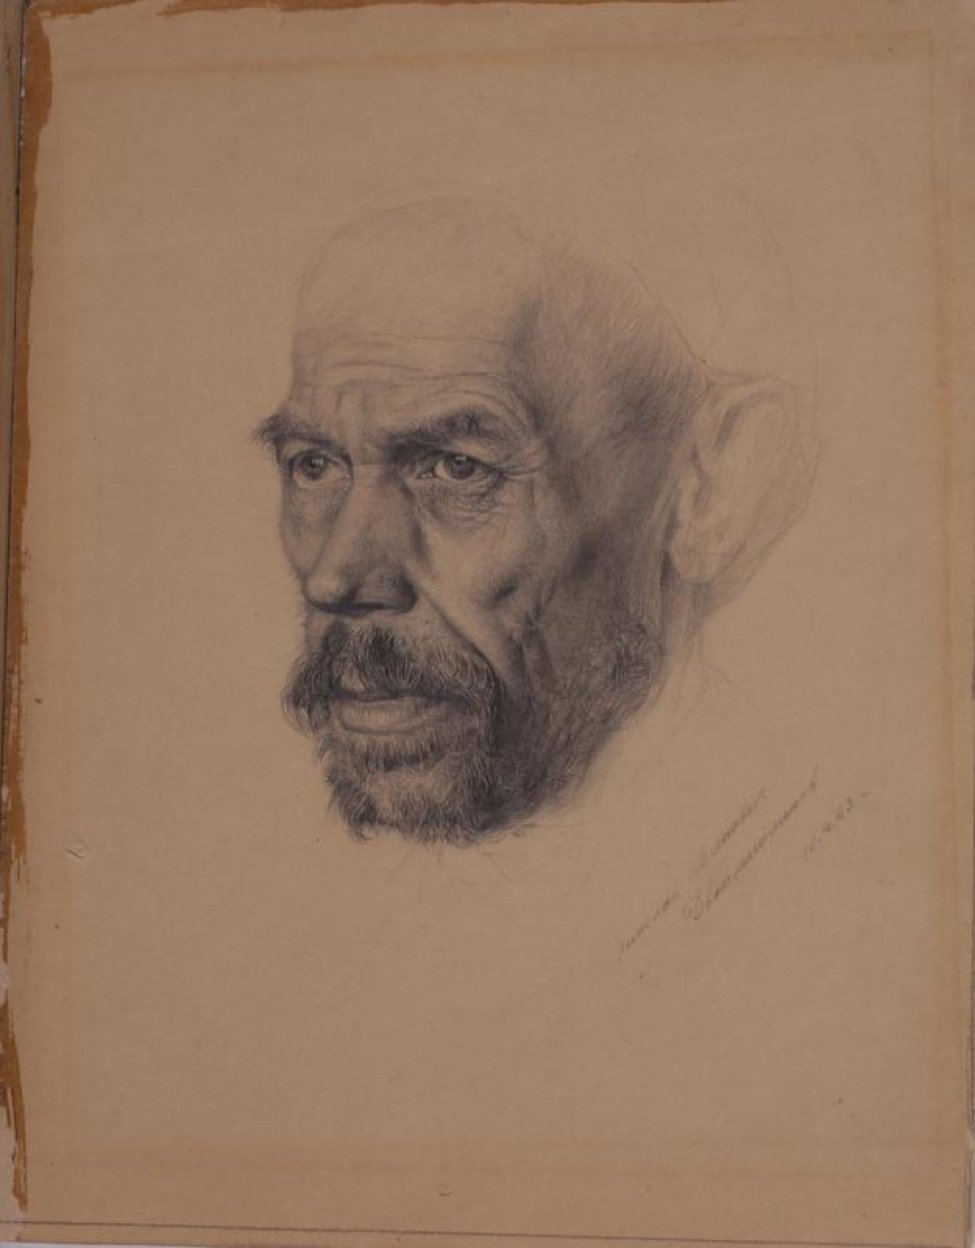 Изображена голова пожилого мужчины в 3/4 повороте влево с небольшими усами и бородой; на лице - глубокие морщины. Ухо и головной убор (берет) лишь намечены карандашом.